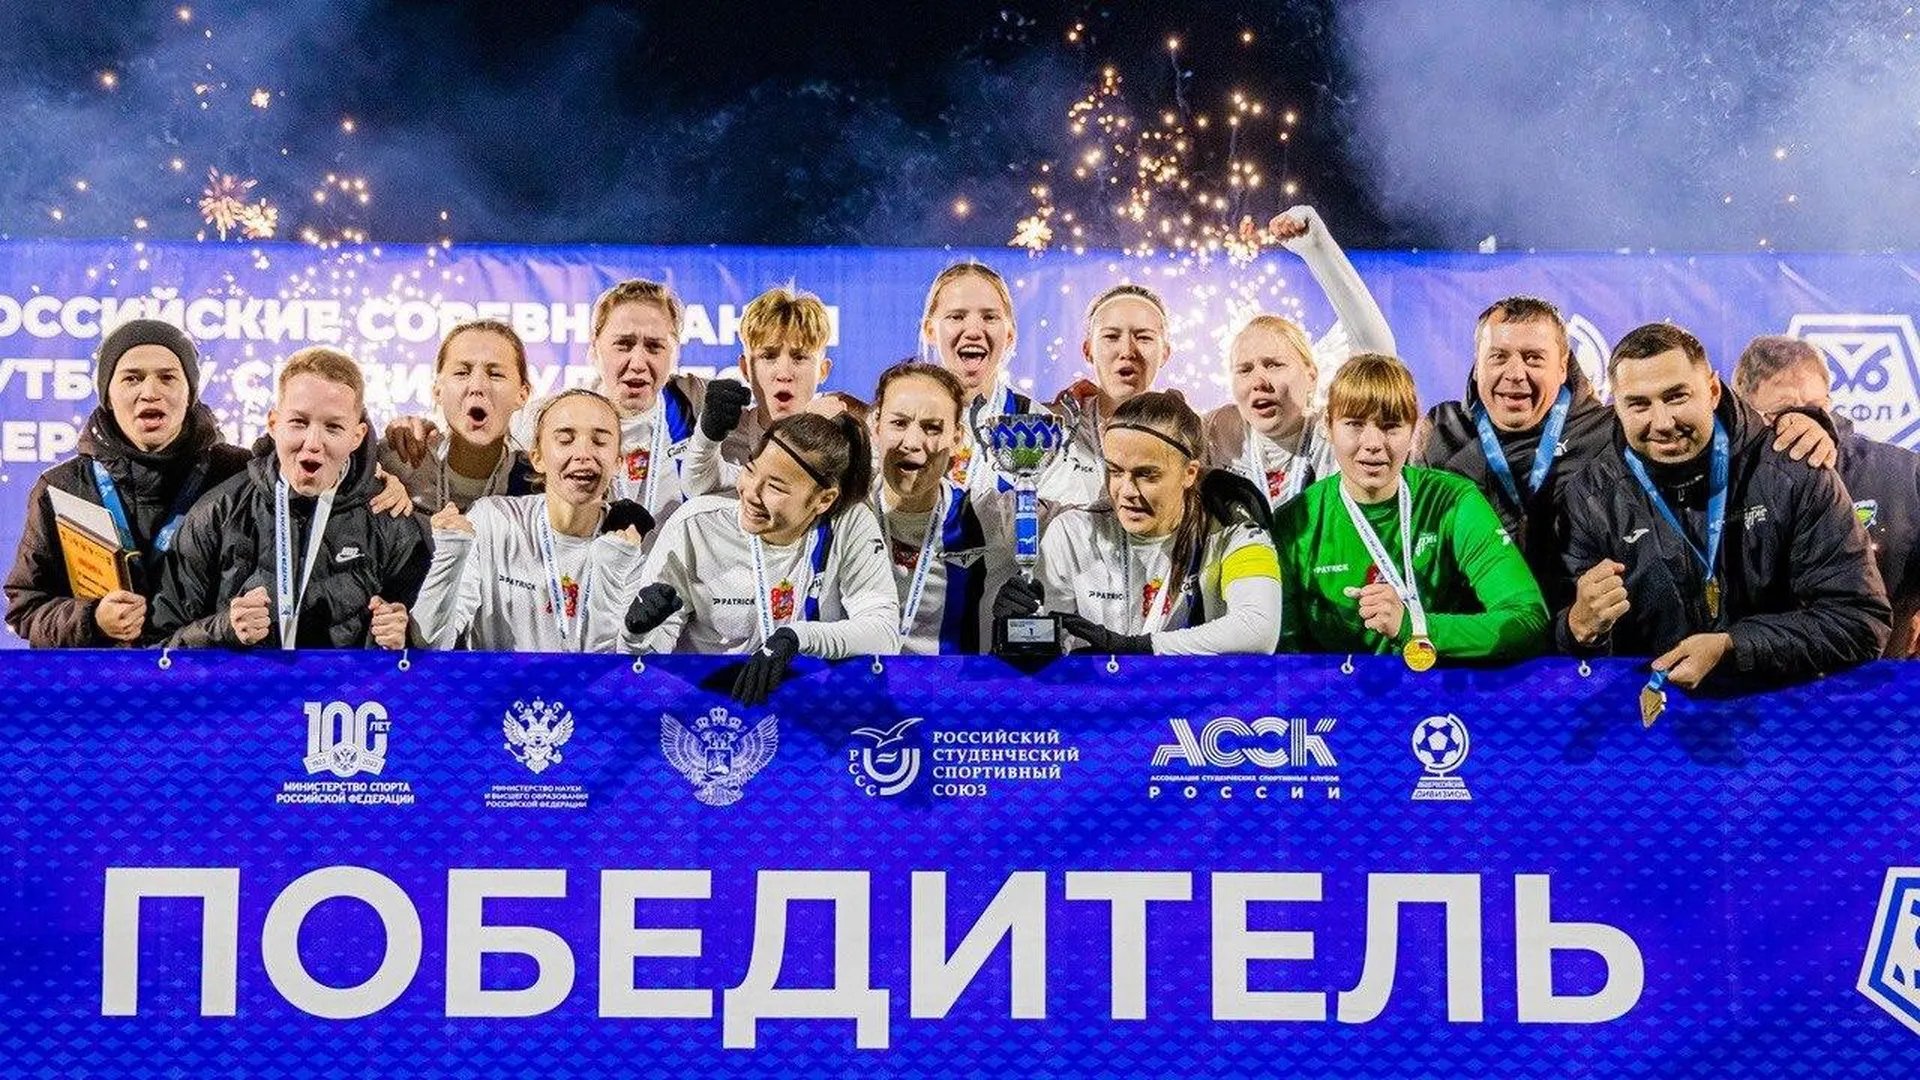 Футболистки из подмосковного Егорьевска выиграли всероссийские соревнования